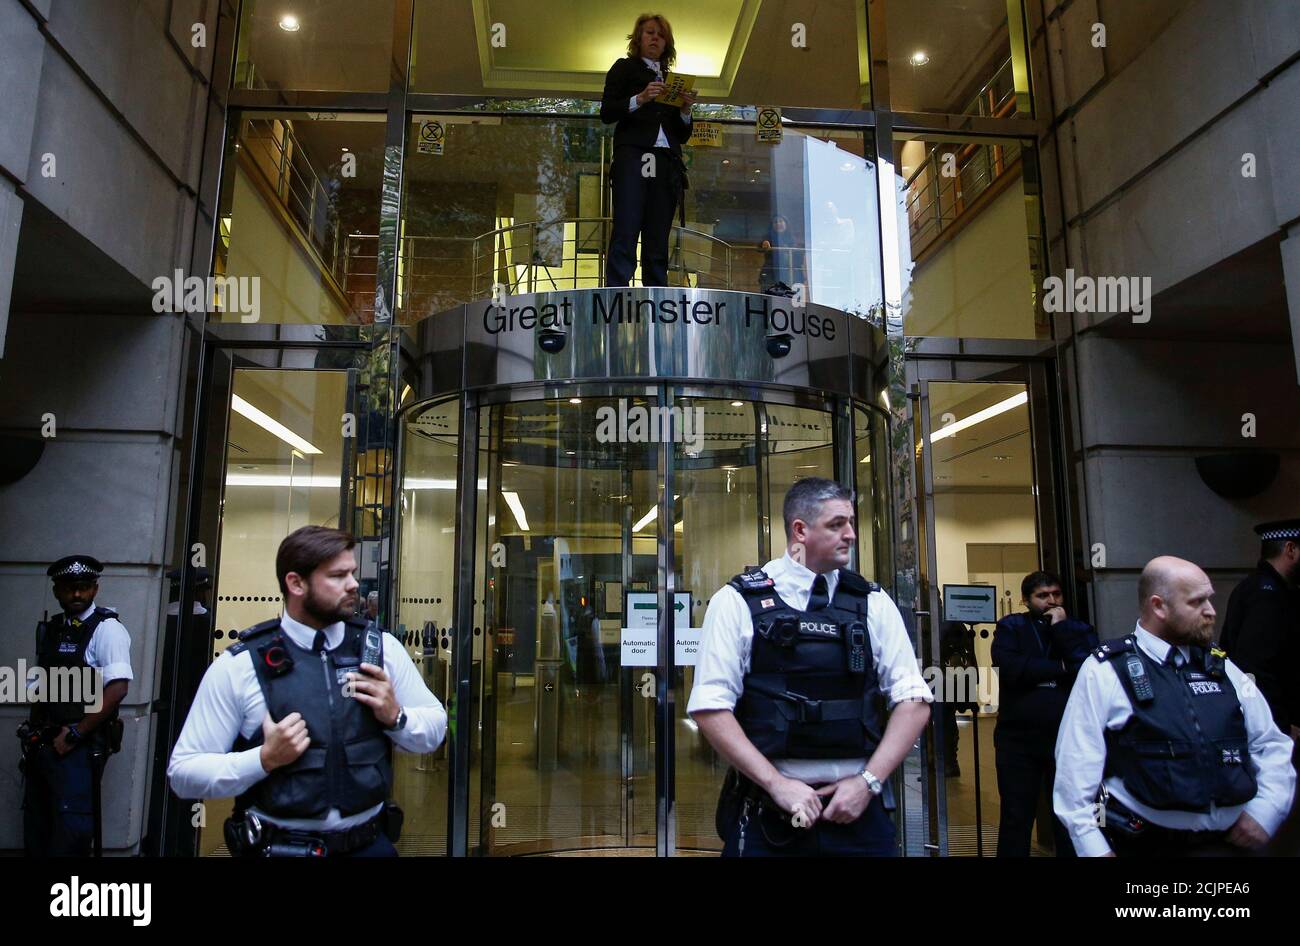 Co-fundador del grupo Rebelión de extinción, Gail Bradbrook, está en la cima de la puerta del Departamento de Transporte, durante una protesta Rebelión de extinción en Londres, Gran Bretaña, el 15 de octubre de 2019. REUTERS/Henry Nicholls Foto de stock